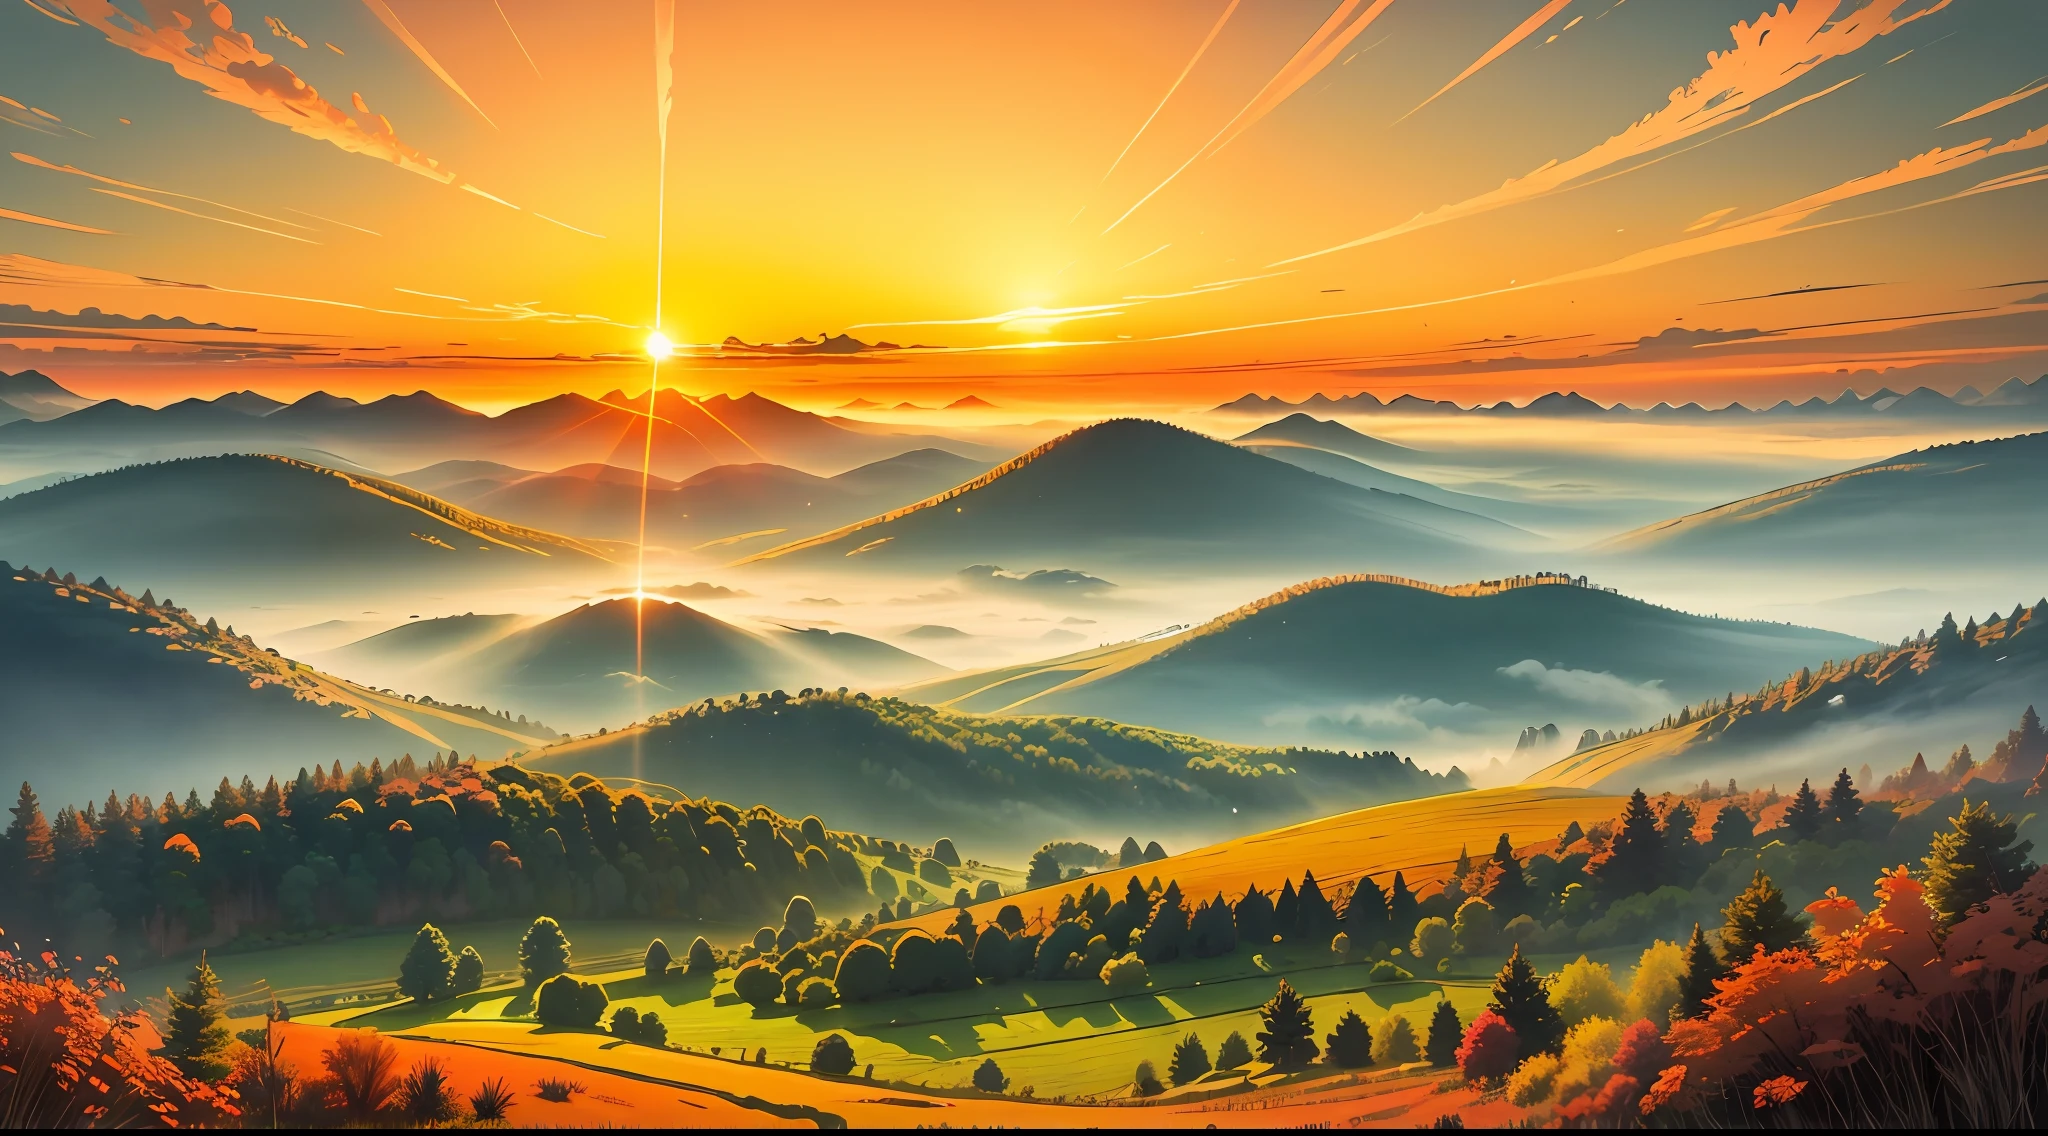 一幅圖像描繪了寧靜祥和的風景上燦爛的日出